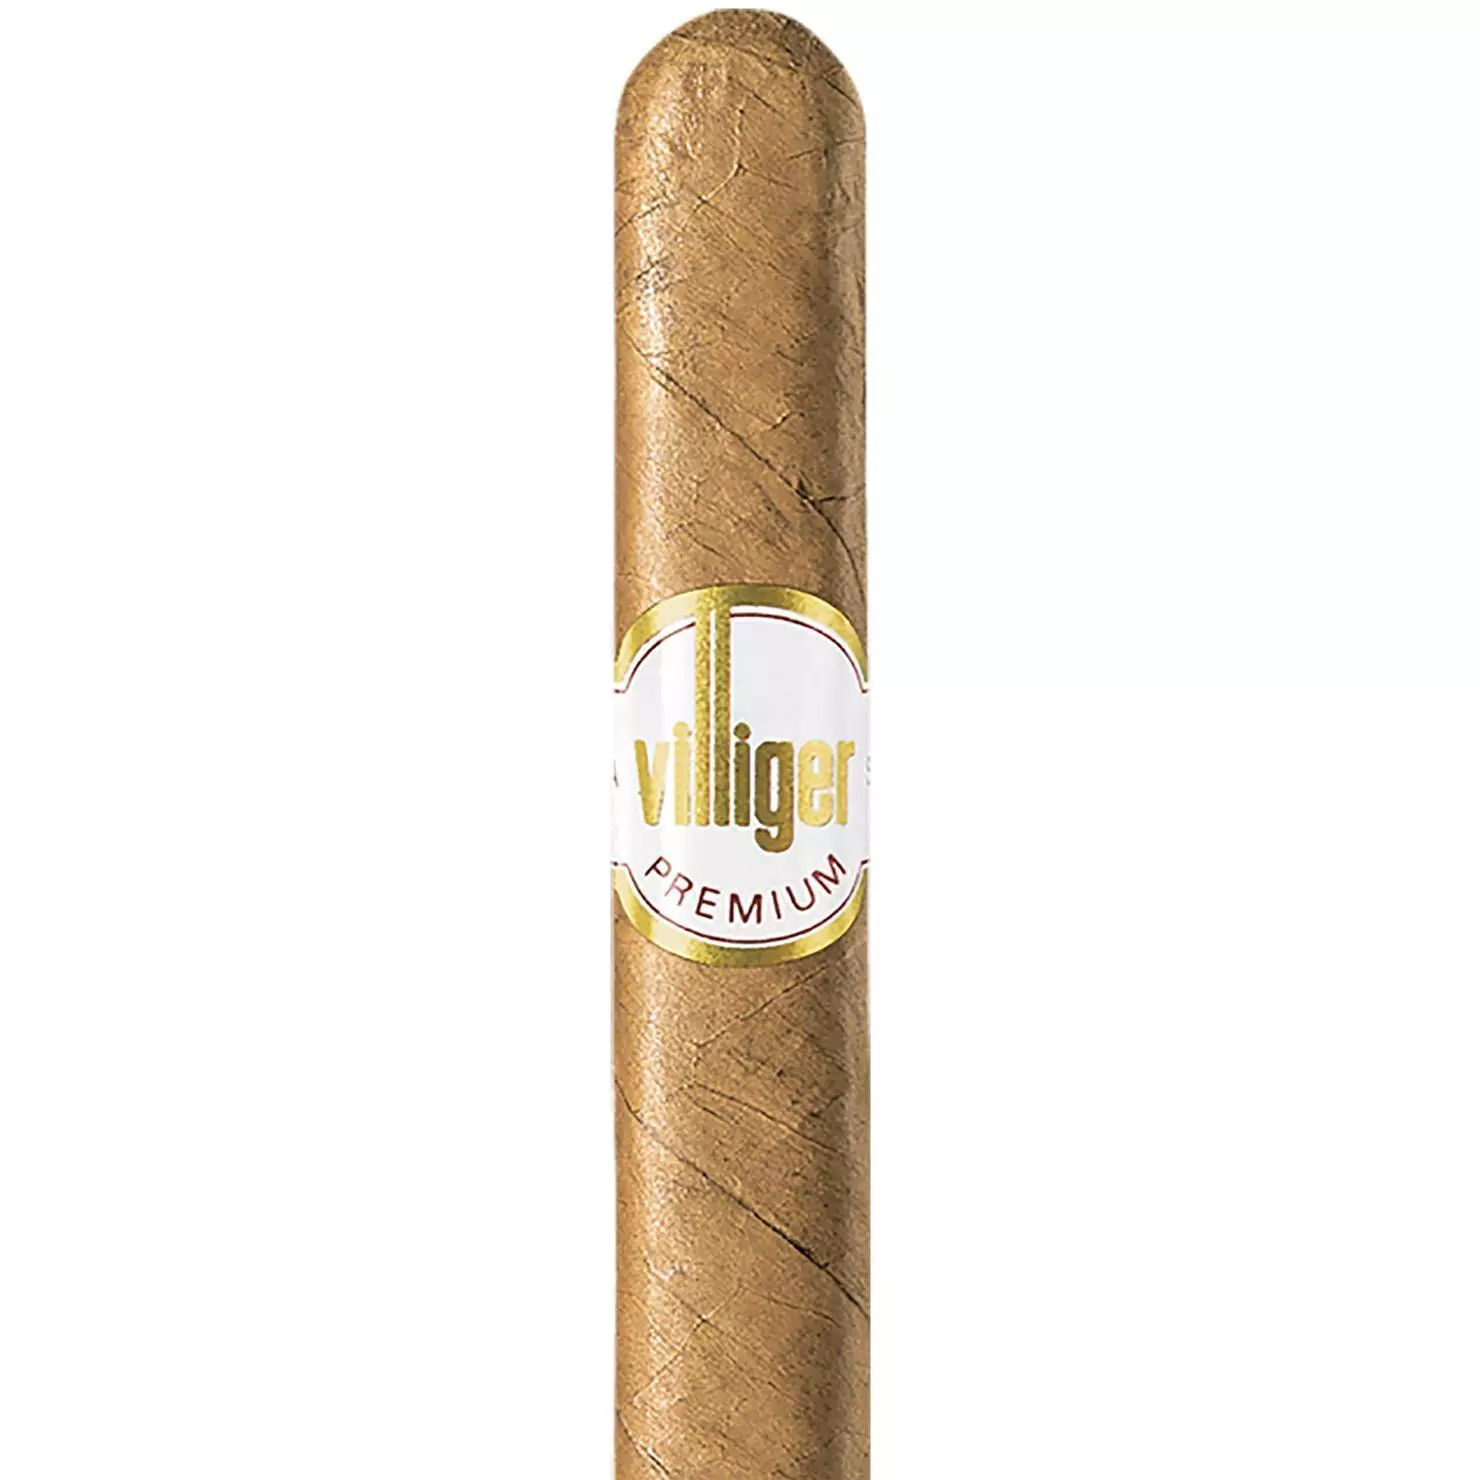 Villiger Premium No 3 Sumatra Zigarren beim Tabakdealer